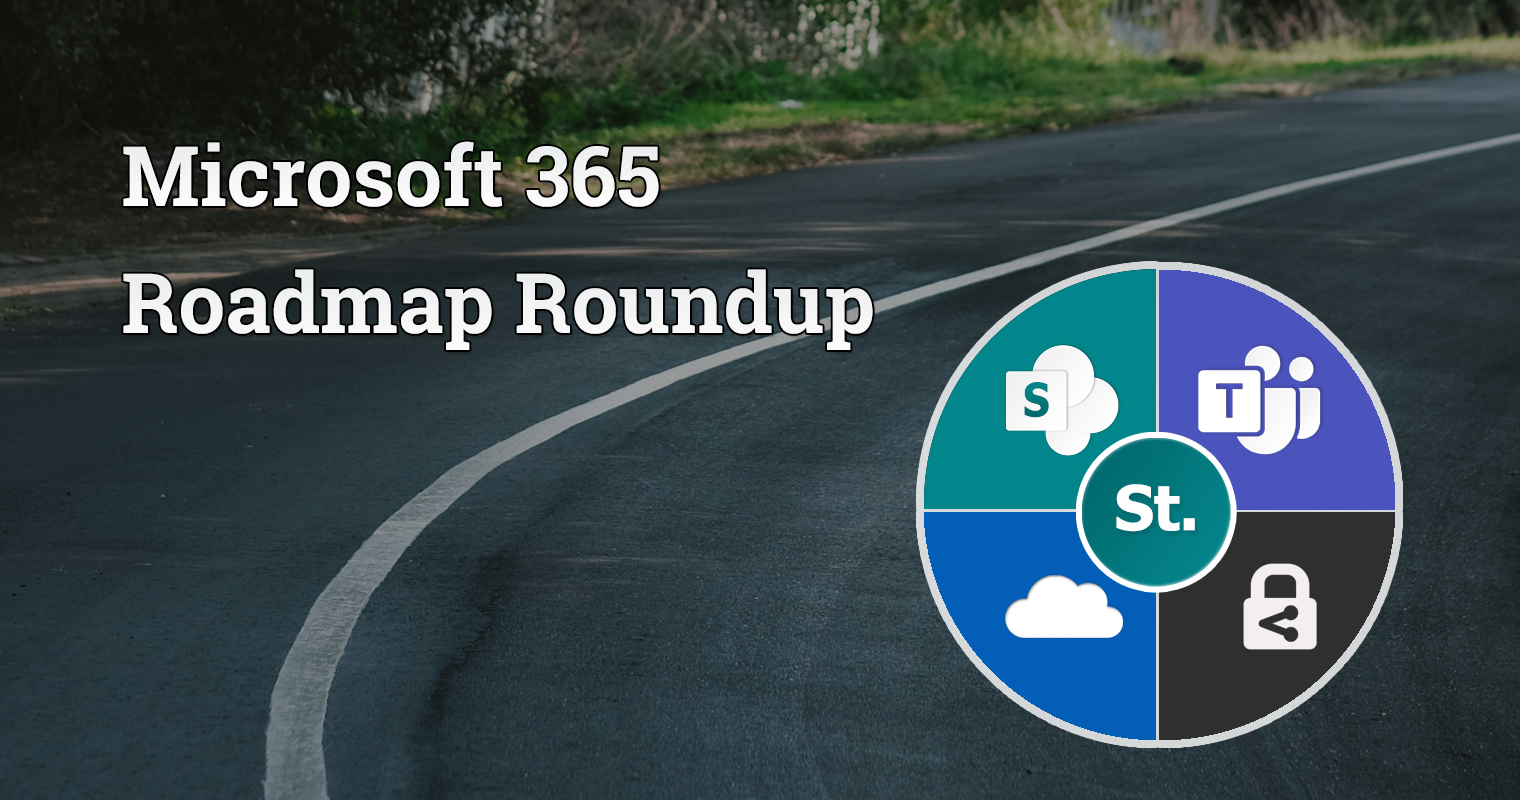 Microsoft 365 roadmap roundup – 25th April 2022